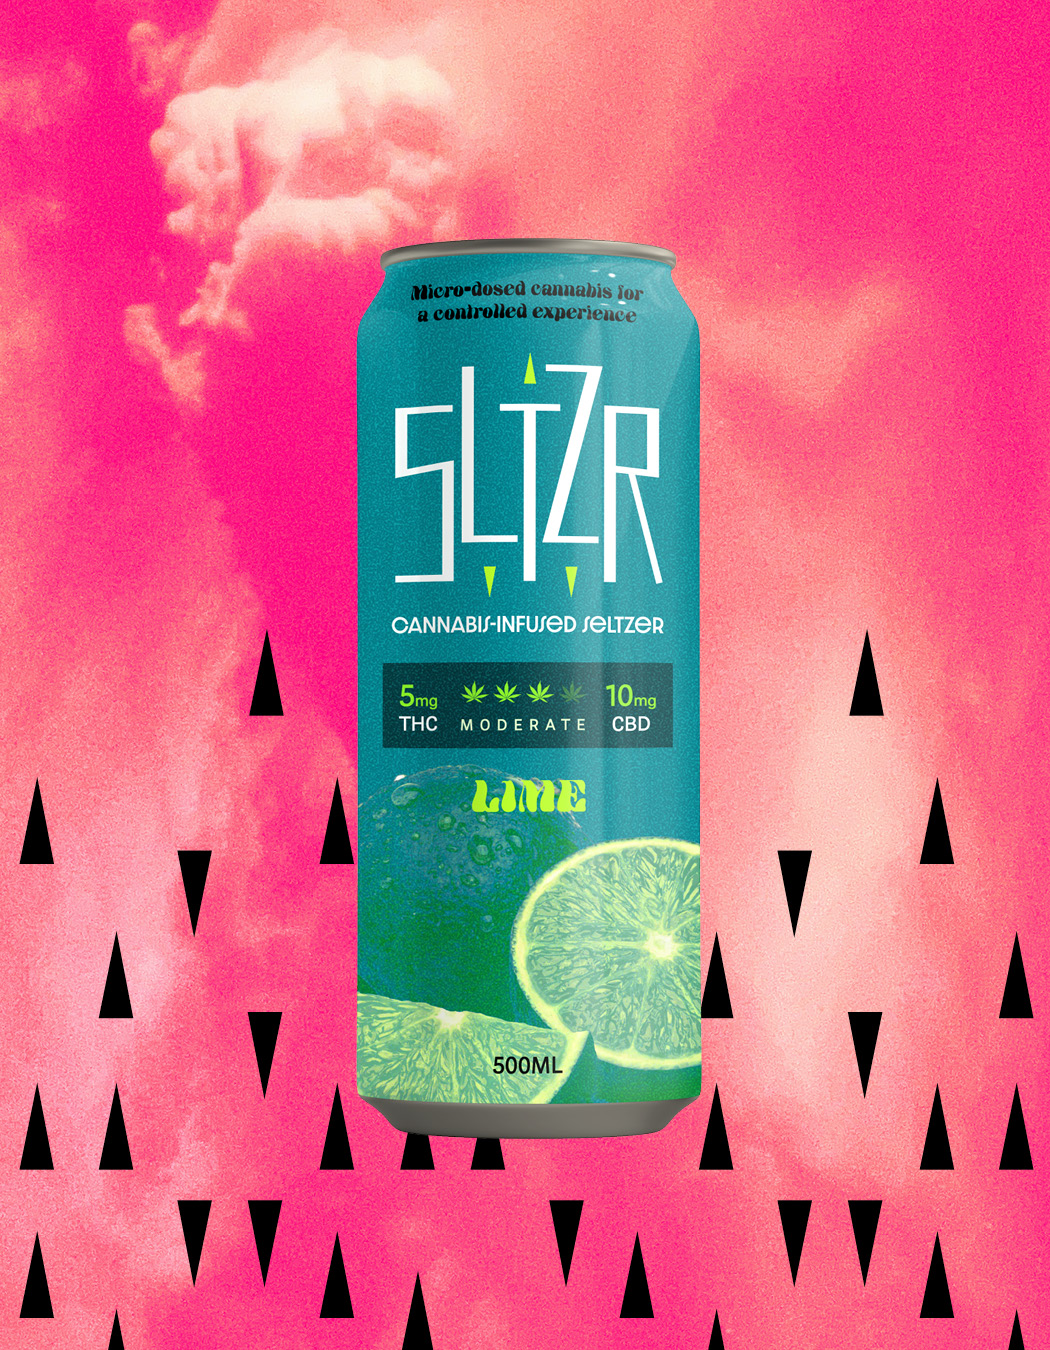 sltzr-ontario-toronto-graphic-brand-design-cannabis-seltzer-beverage